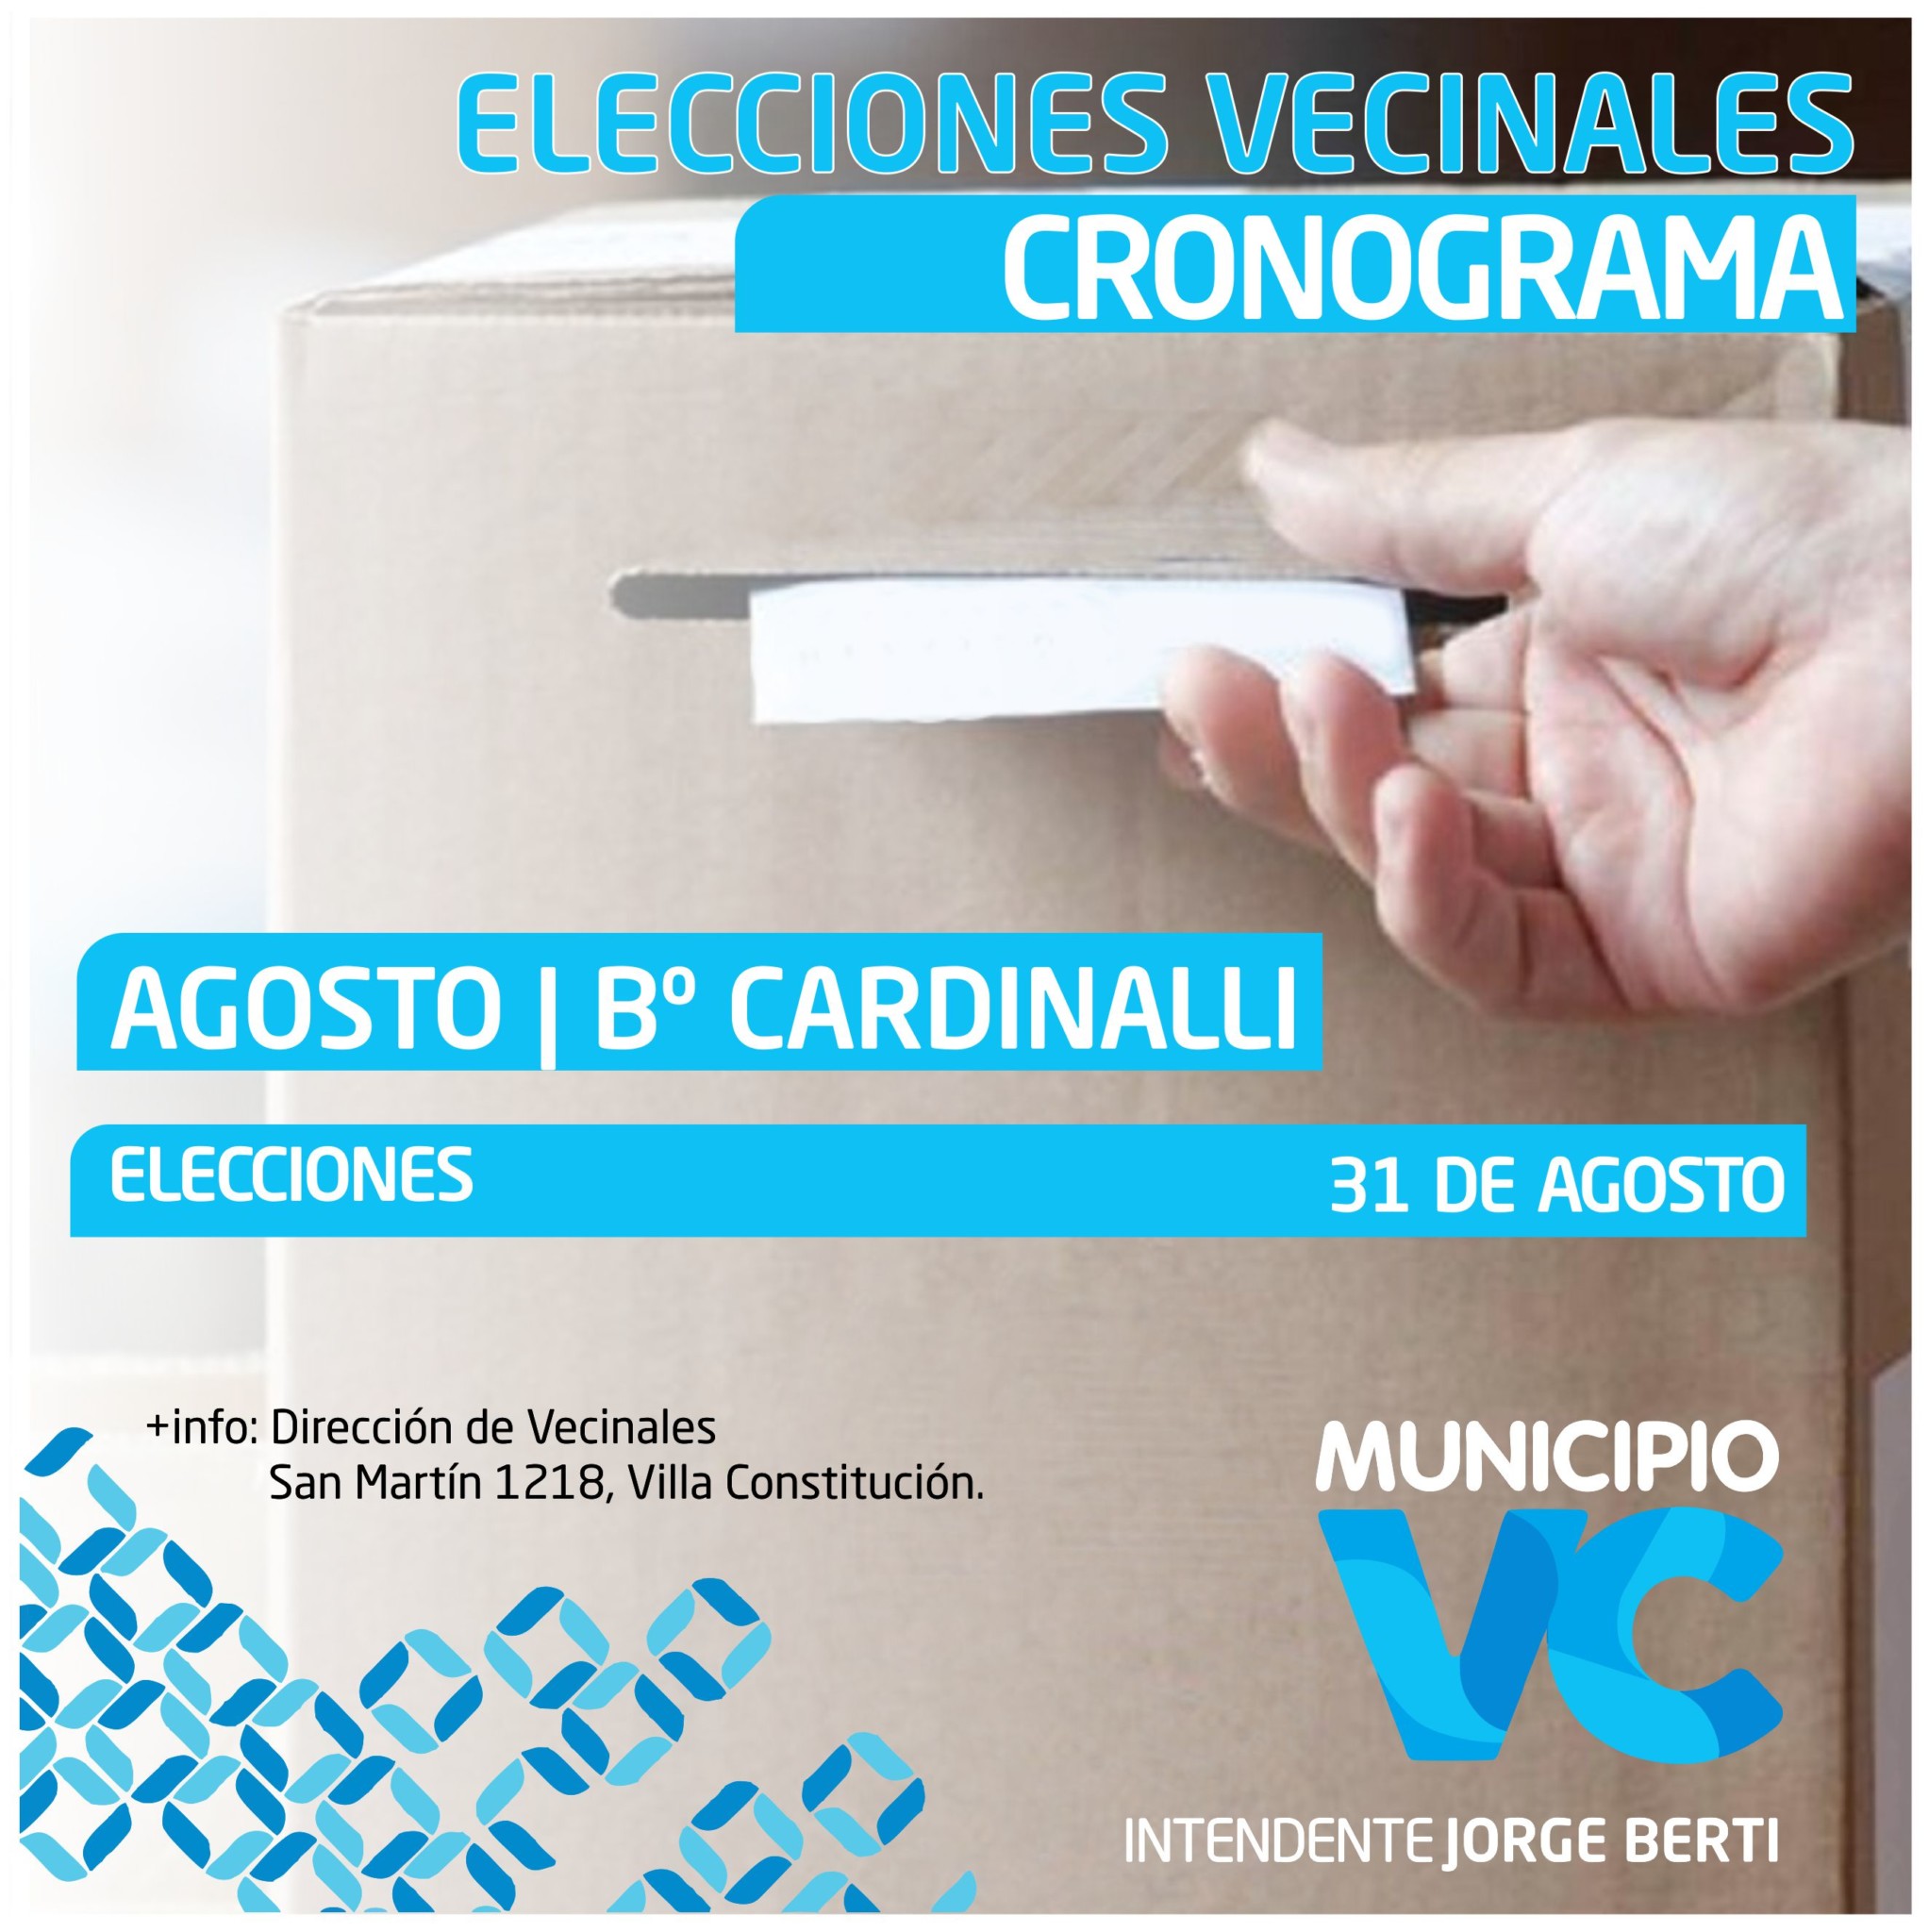 Elecciones en barrio cardinalli